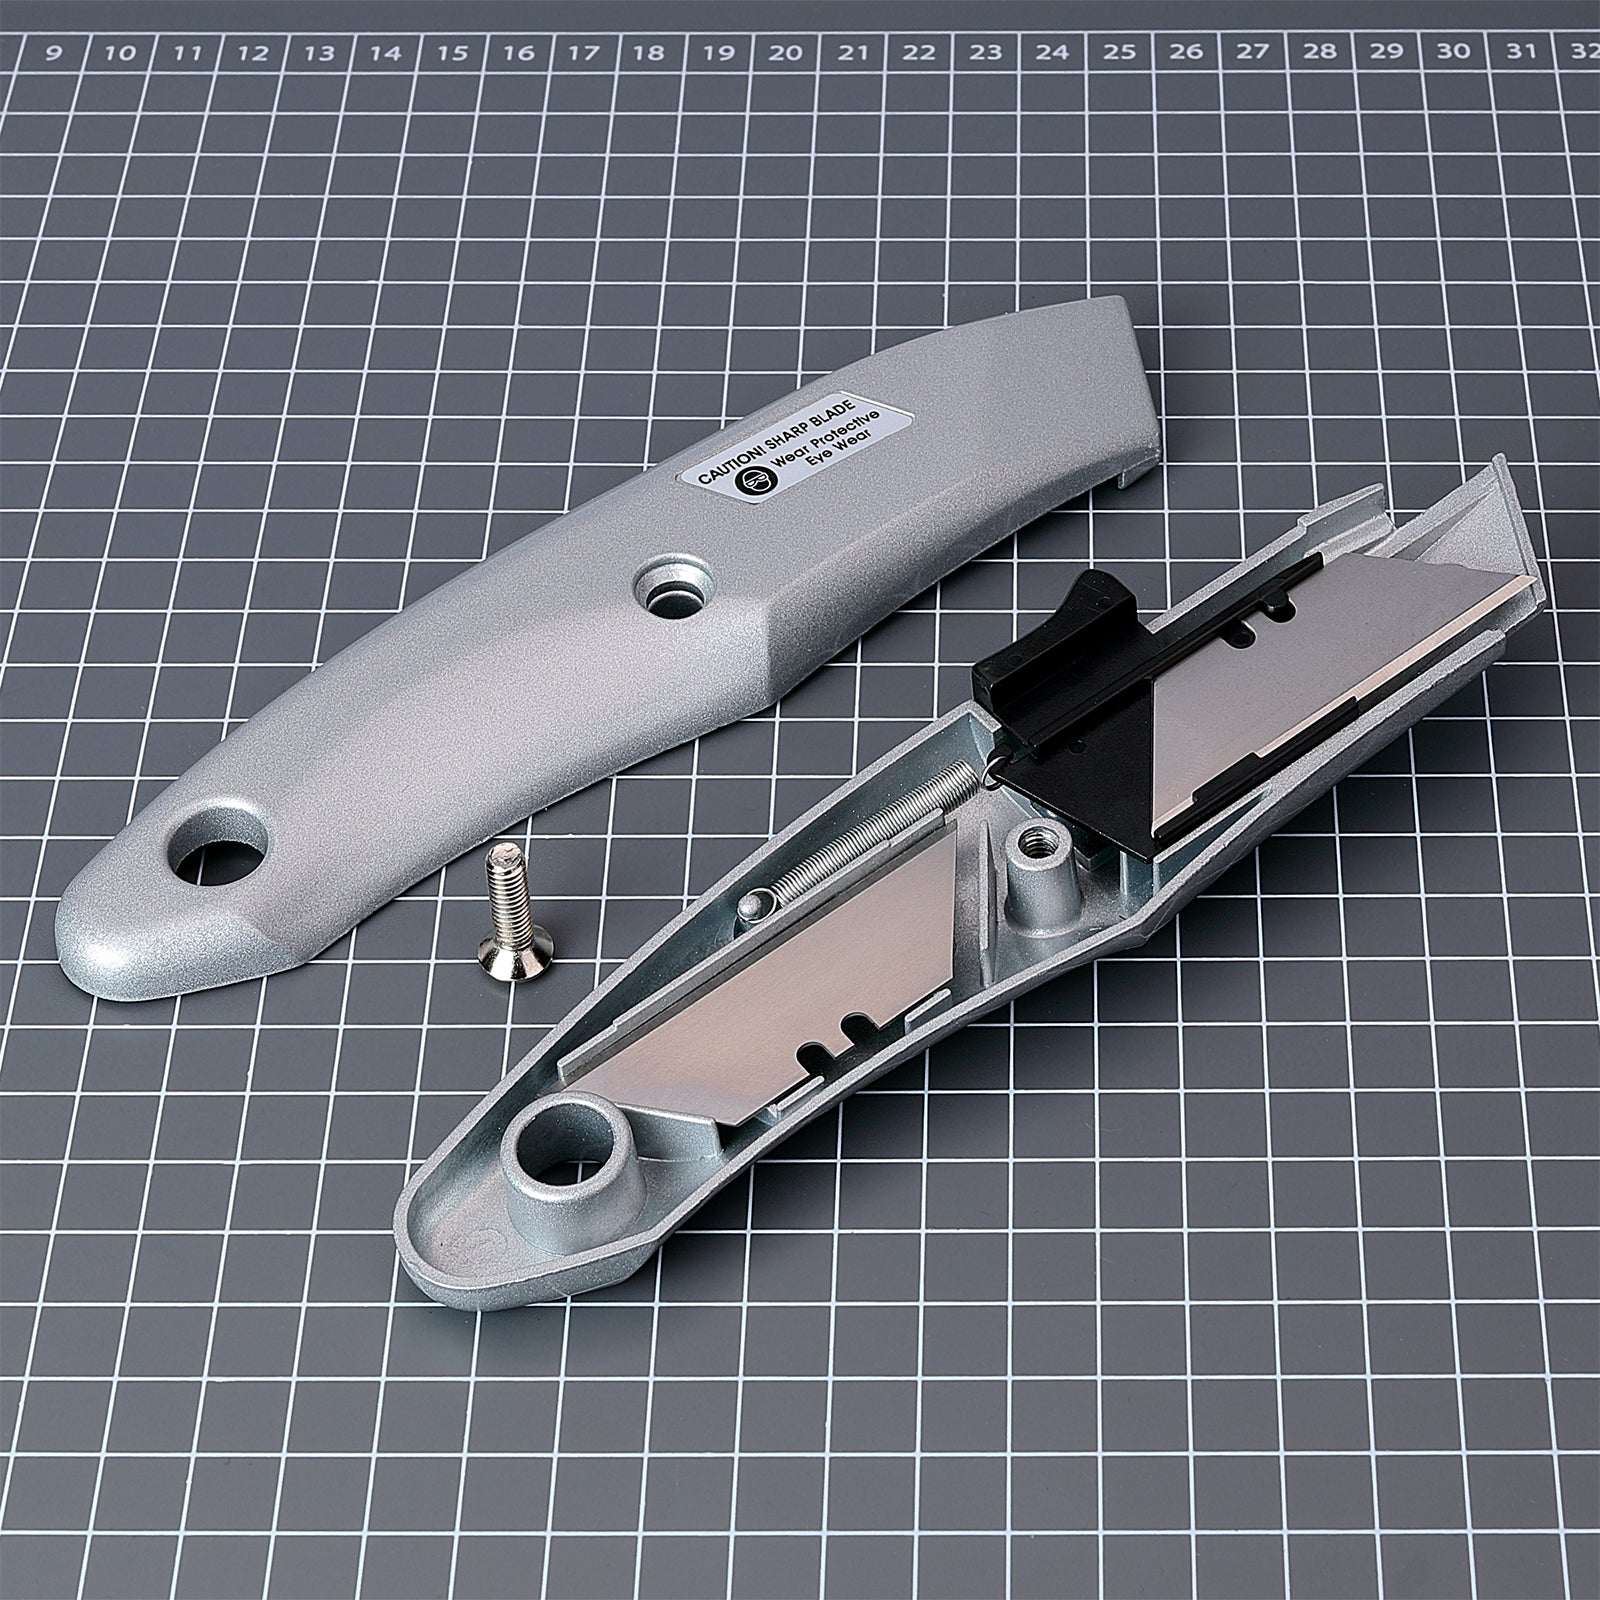 Sdi Ergo Ease - Cutter Para Manualidades Con Diseño Ergonómico. Turquesa  con Ofertas en Carrefour